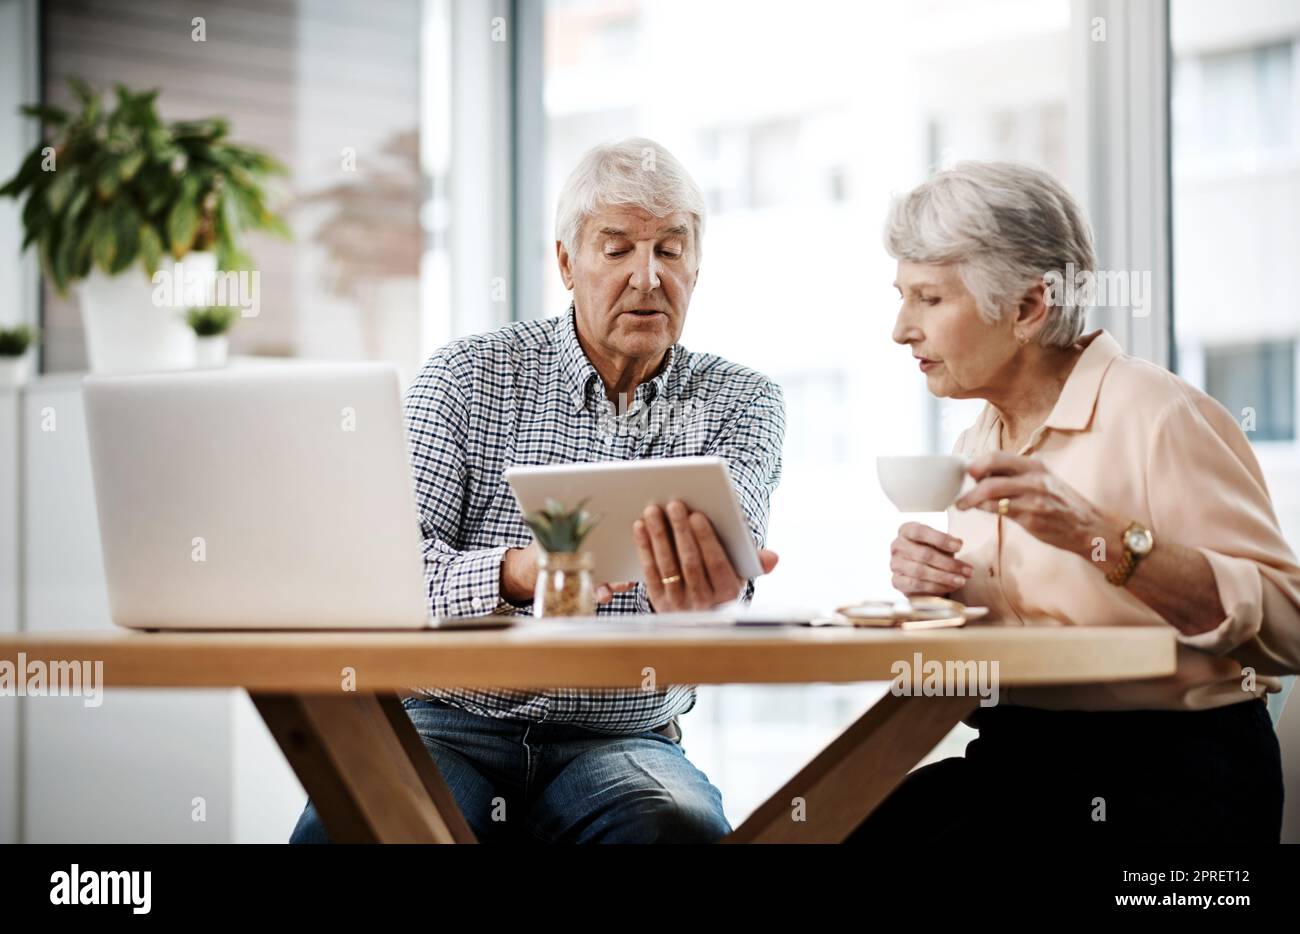 Hier erfahren Sie, wie unsere Finanzen aussehen. Aufnahme eines älteren Paares, das zu Hause an seinen Finanzen arbeitet. Stockfoto